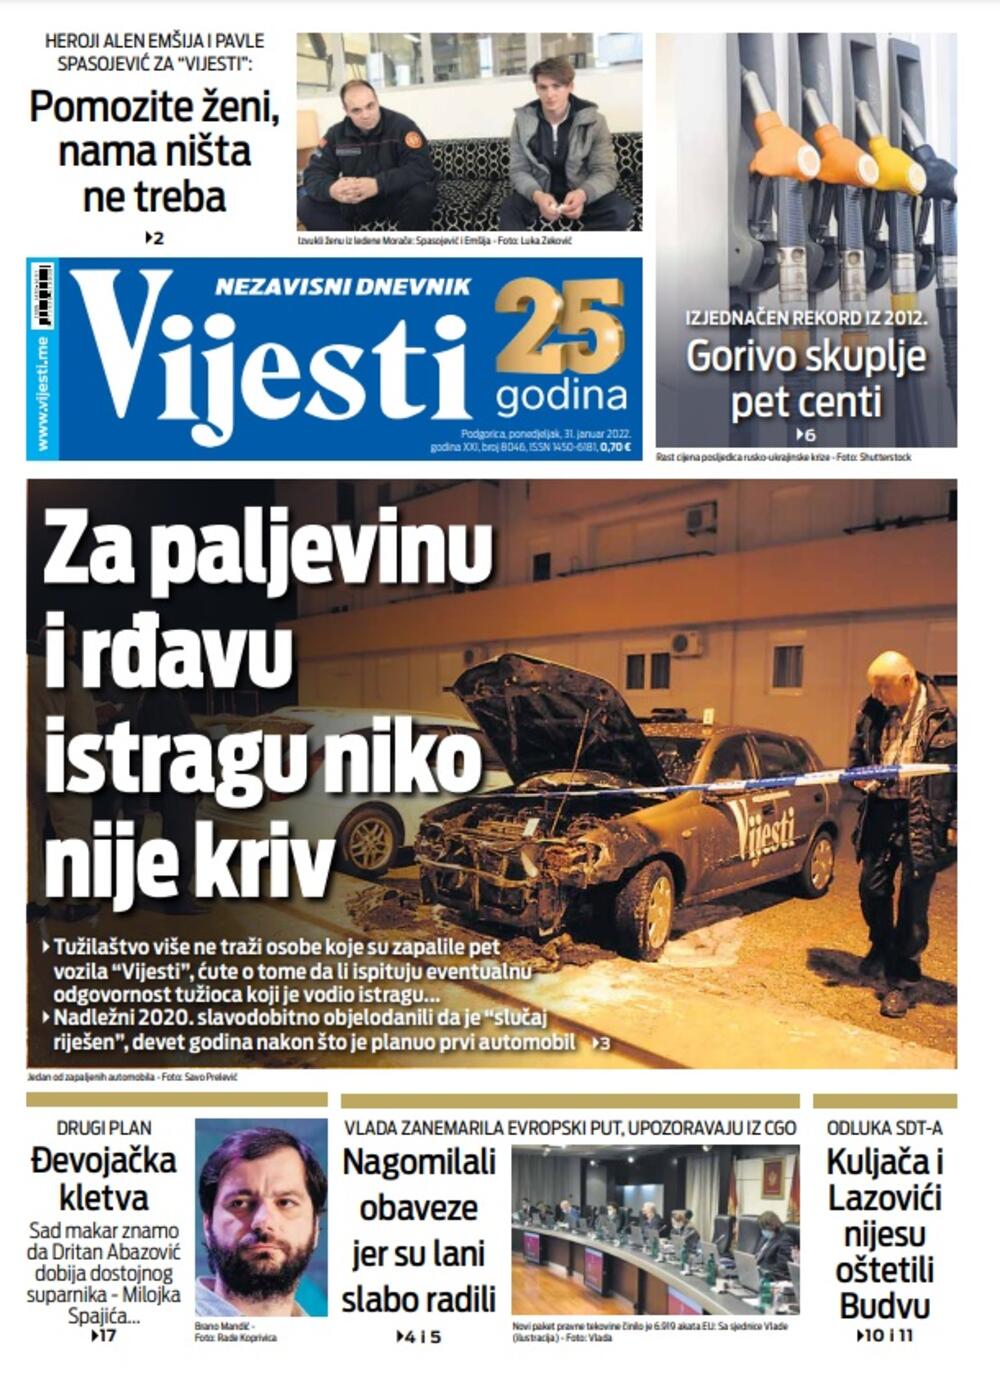 Naslovna strana "Vijesti" za 31. januar 2022., Foto: Vijesti